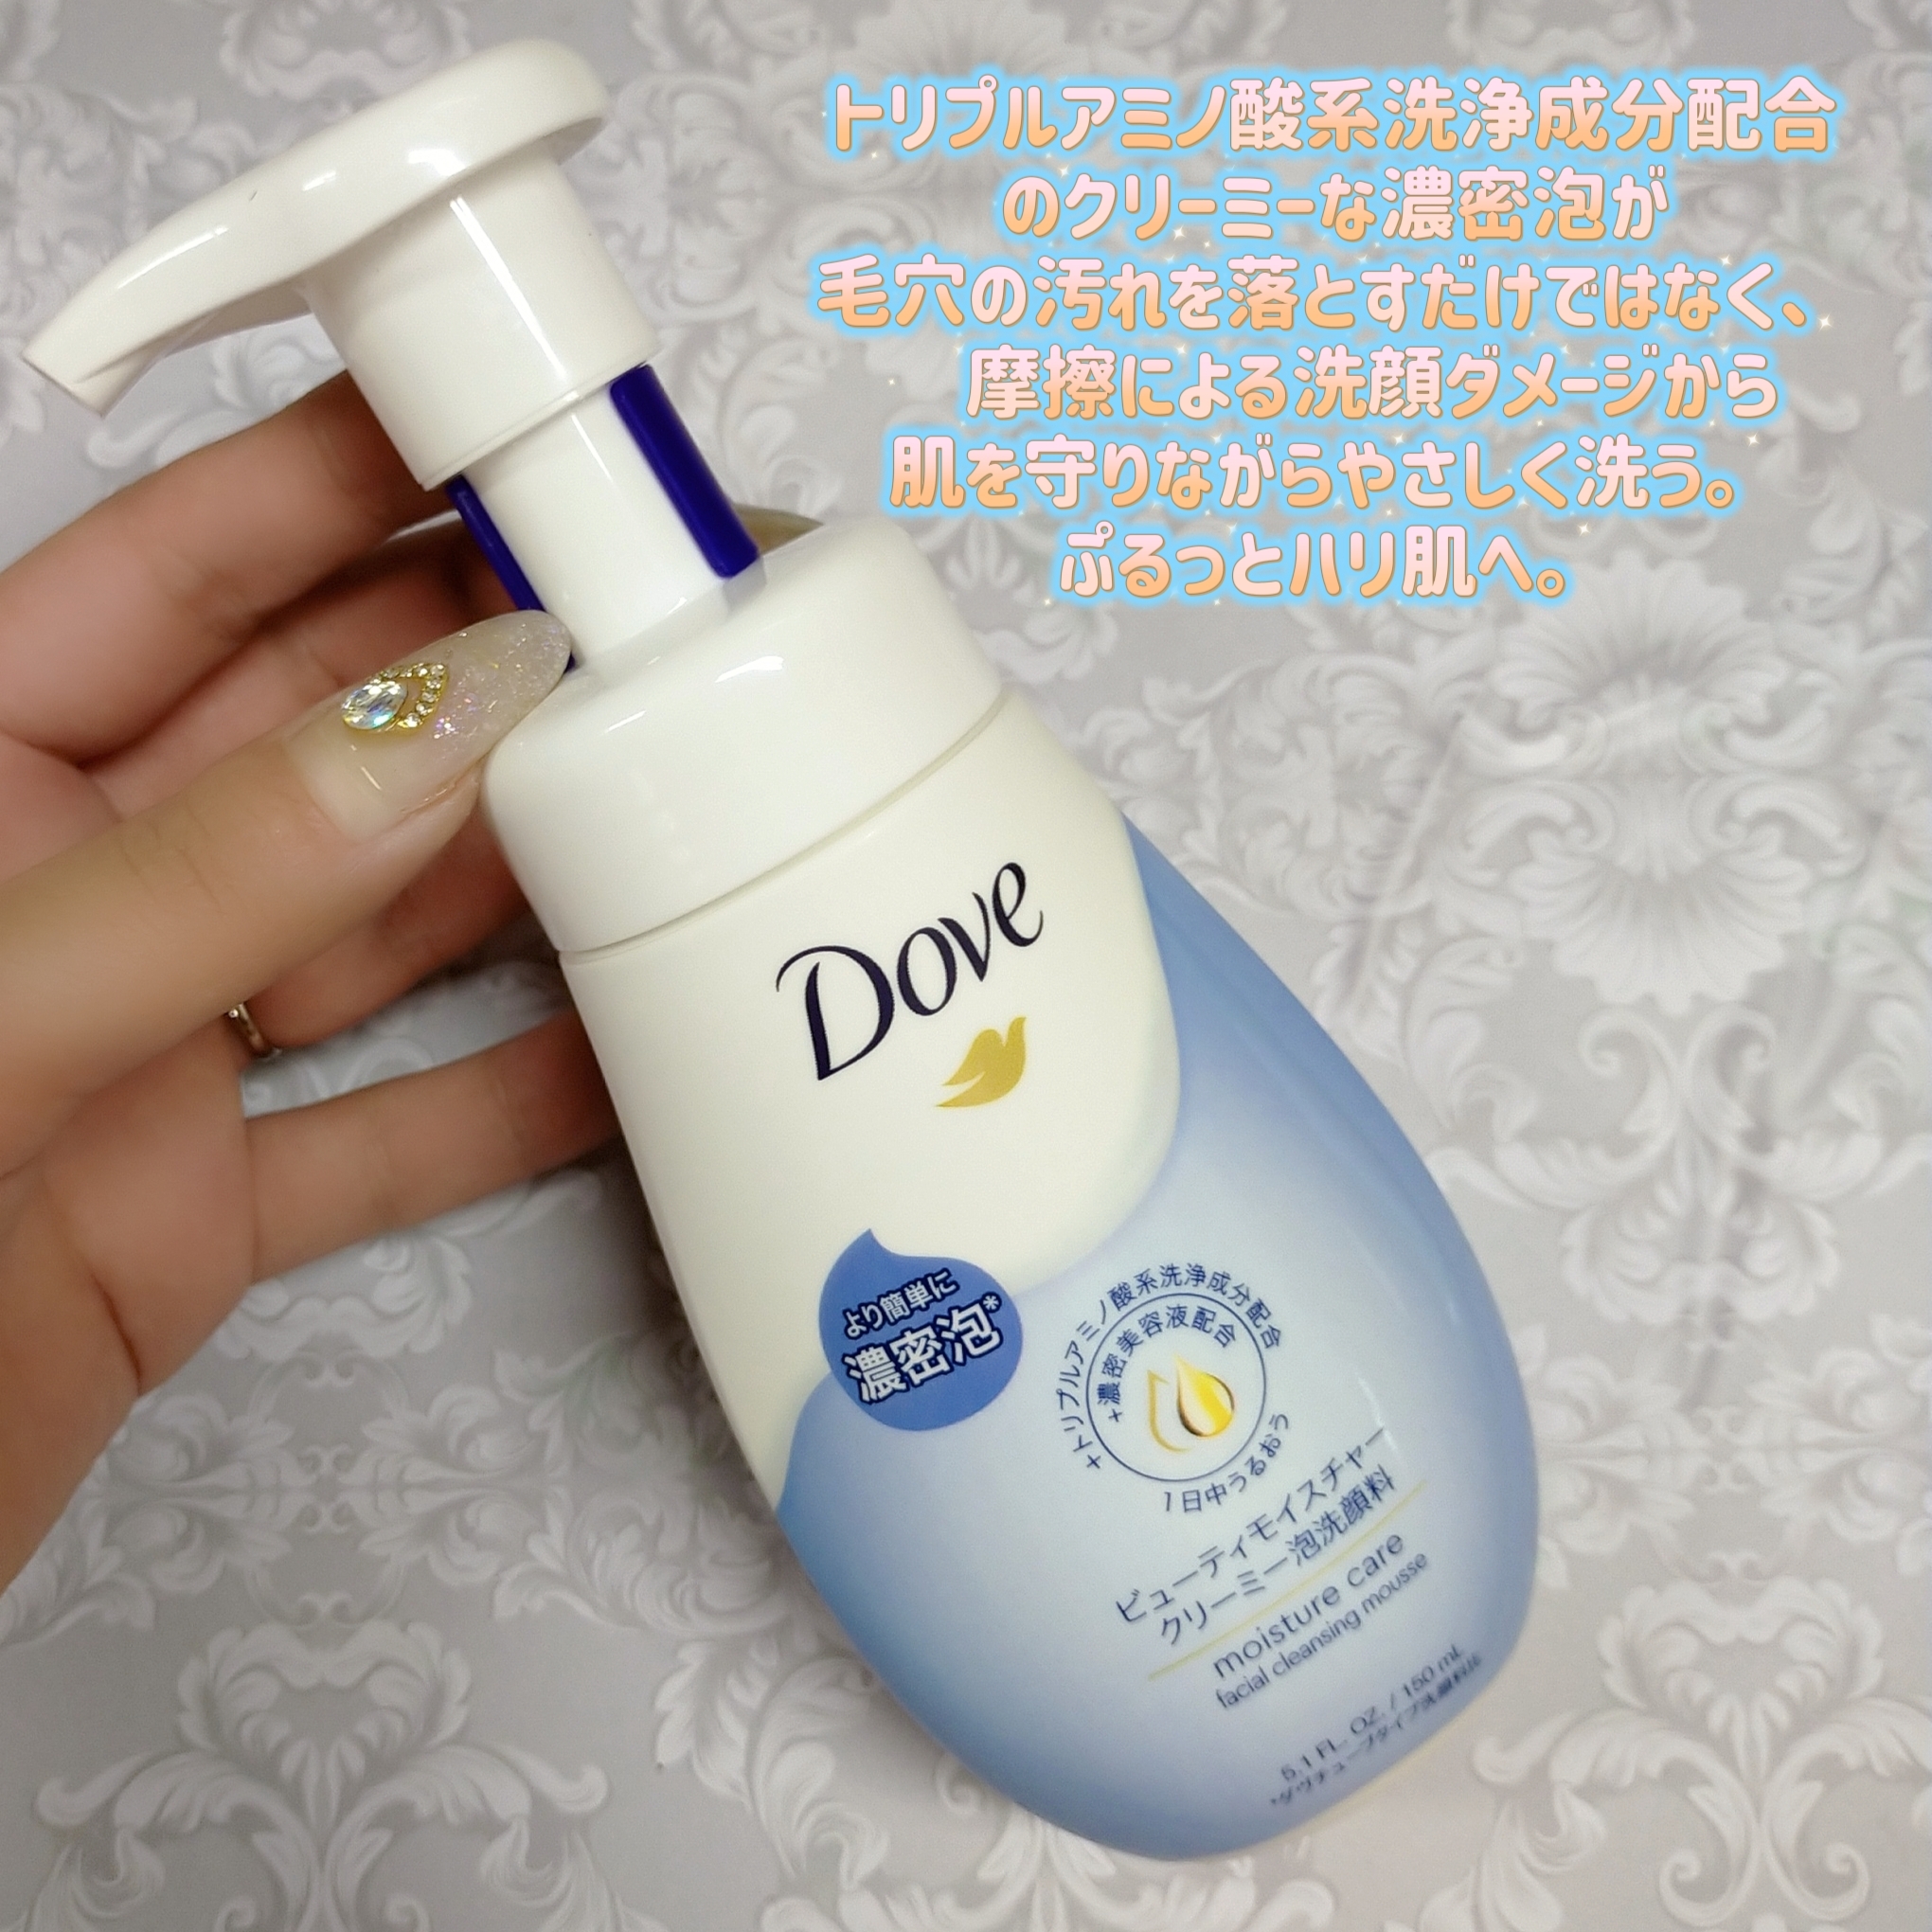 Dove(ダヴ) ビューティモイスチャー クリーミー泡洗顔料の良い点・メリットに関するみこさんの口コミ画像1